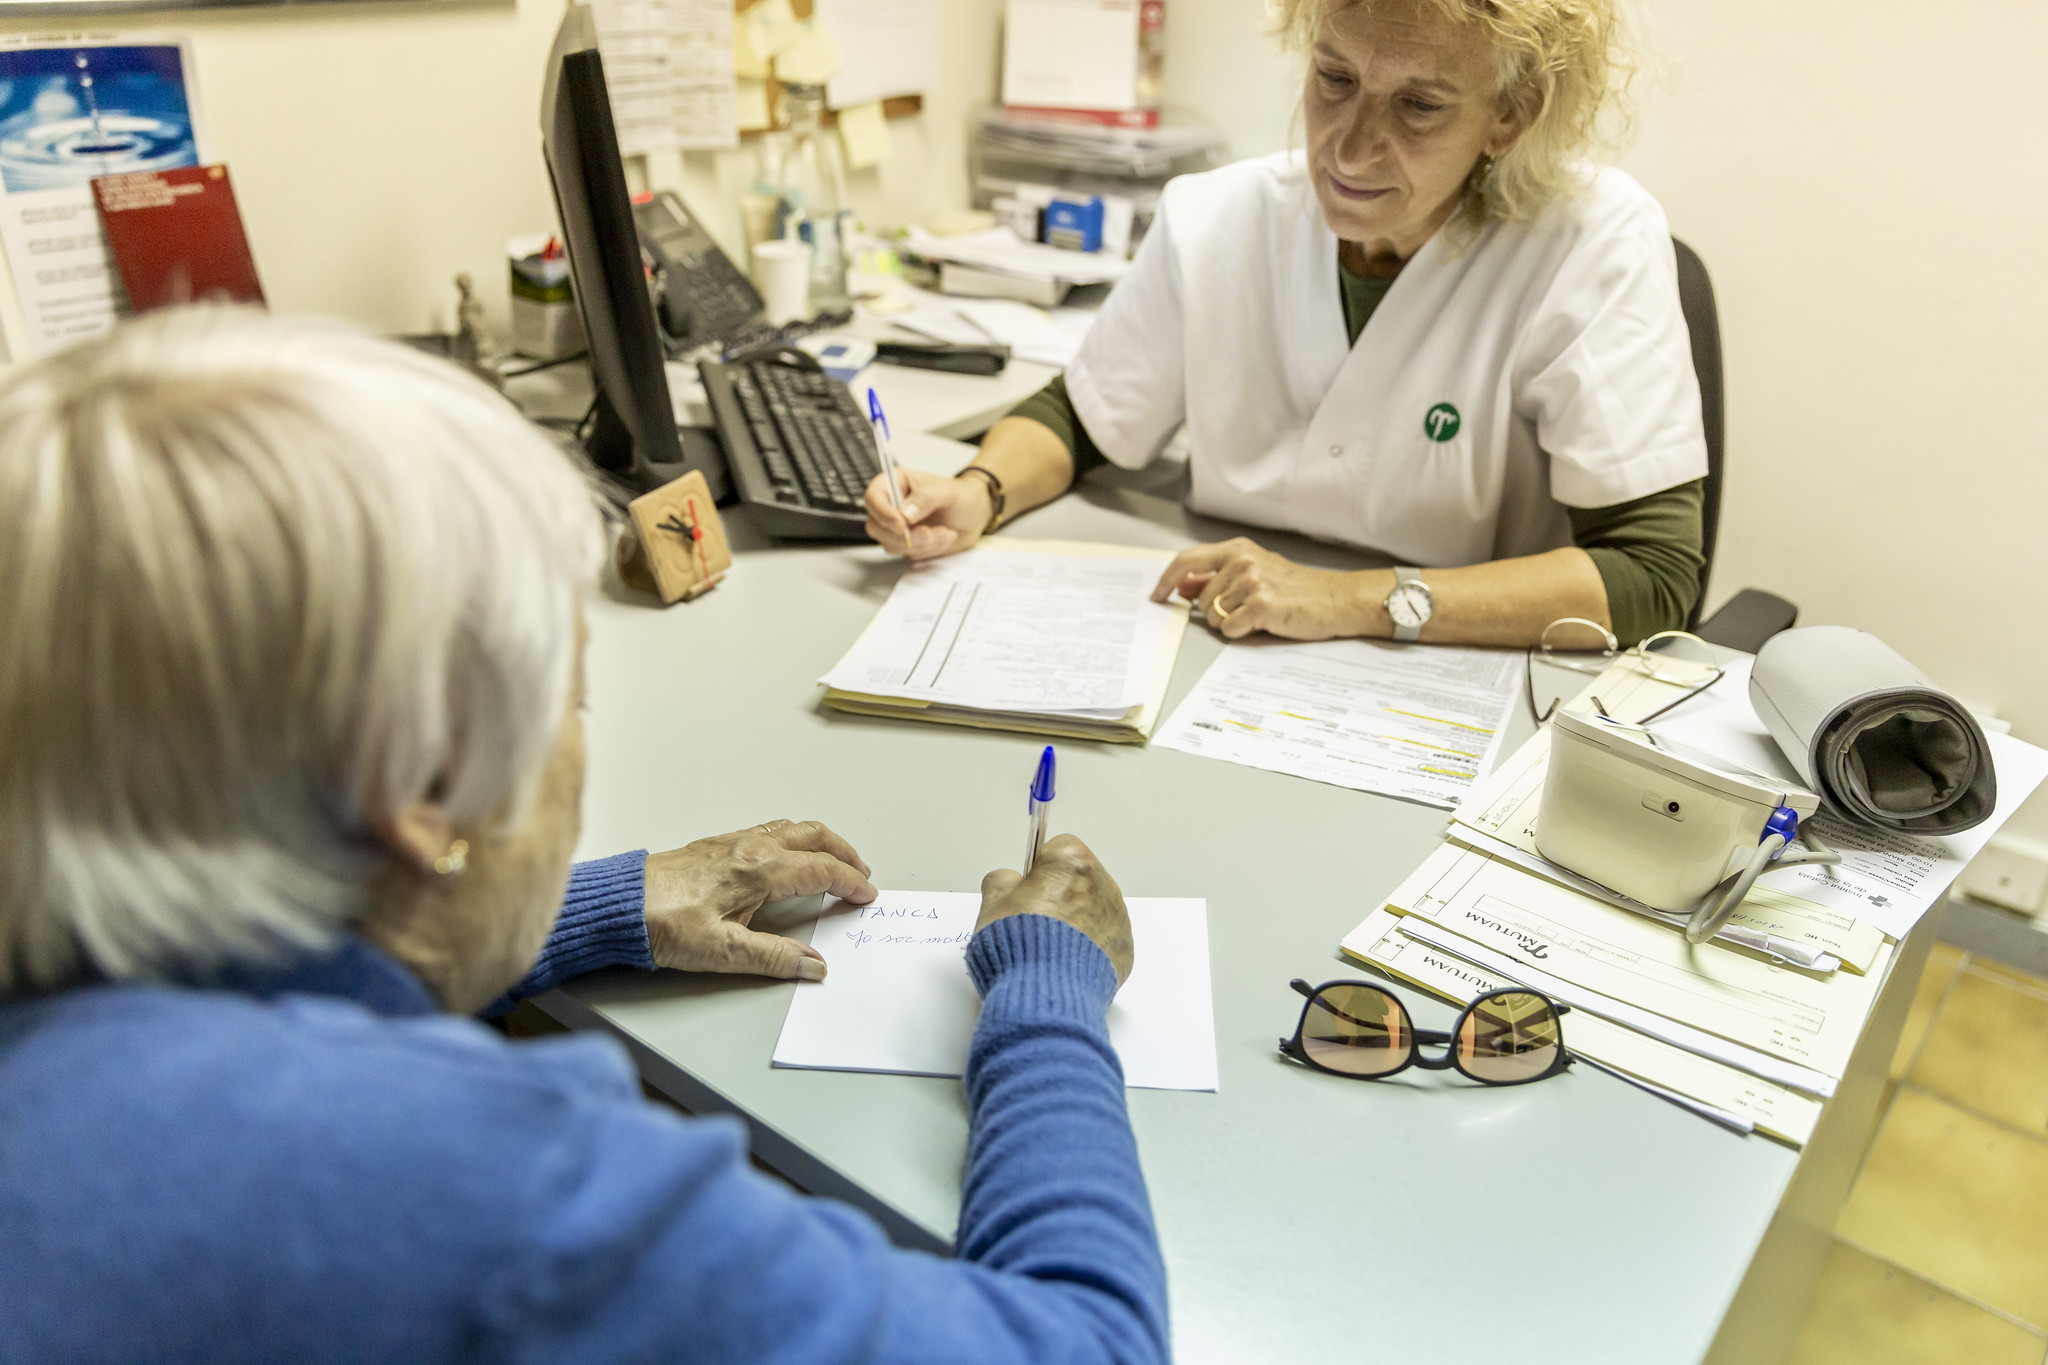 La Consejería de Salud de Asturias ha acreditado a otros 2.247 profesionales de enfermería para la indicación, uso y autorización de medicamentos y productos sanitarios. FOTO: Ariadna Creus y Àngel garcía (Banc Imatges Infermeres).